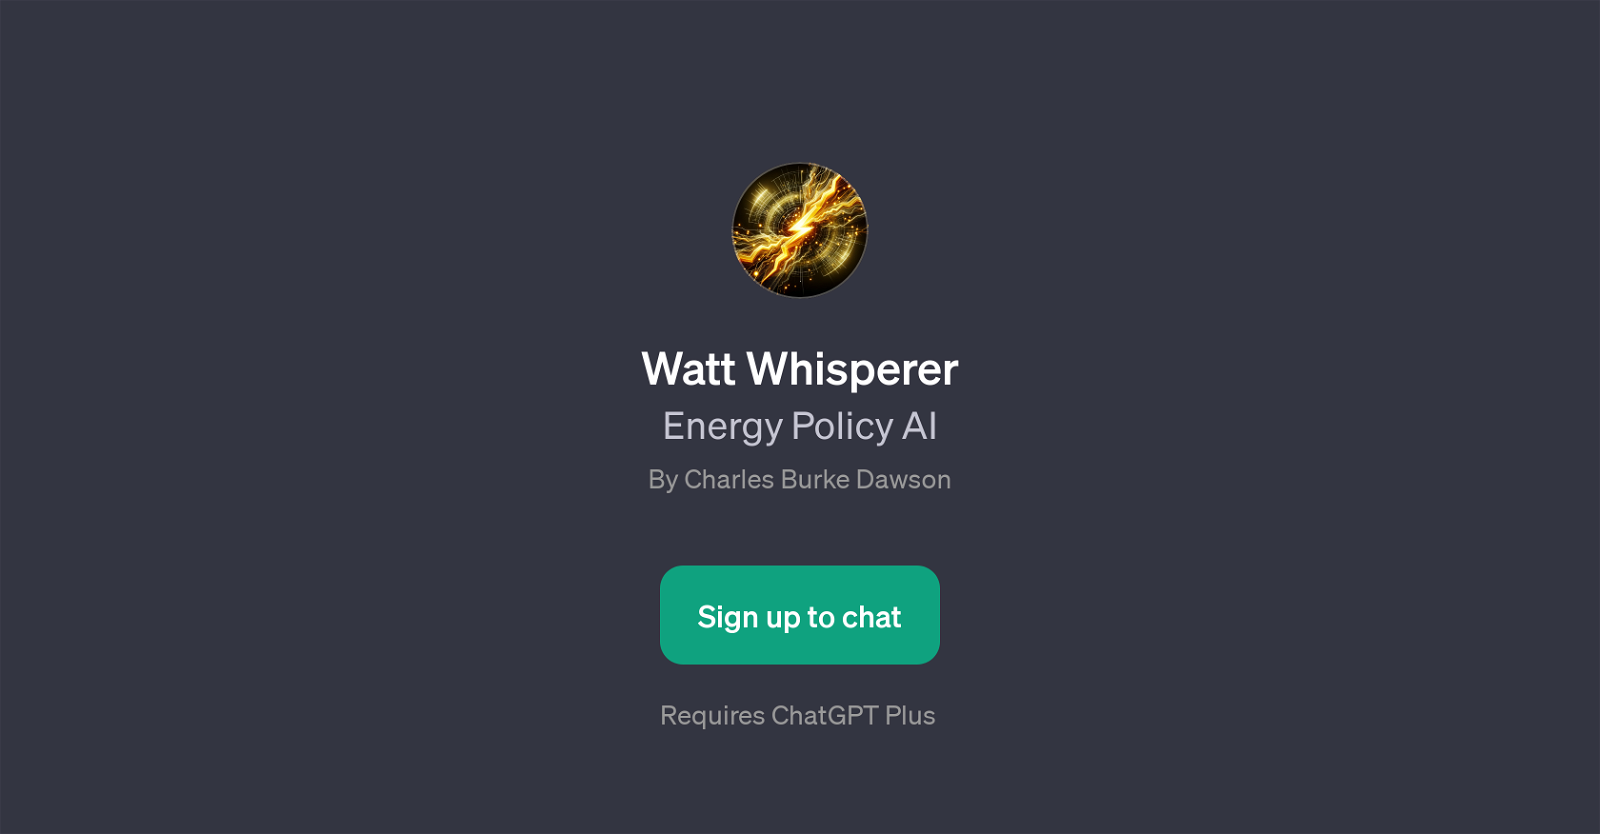 Watt Whisperer website